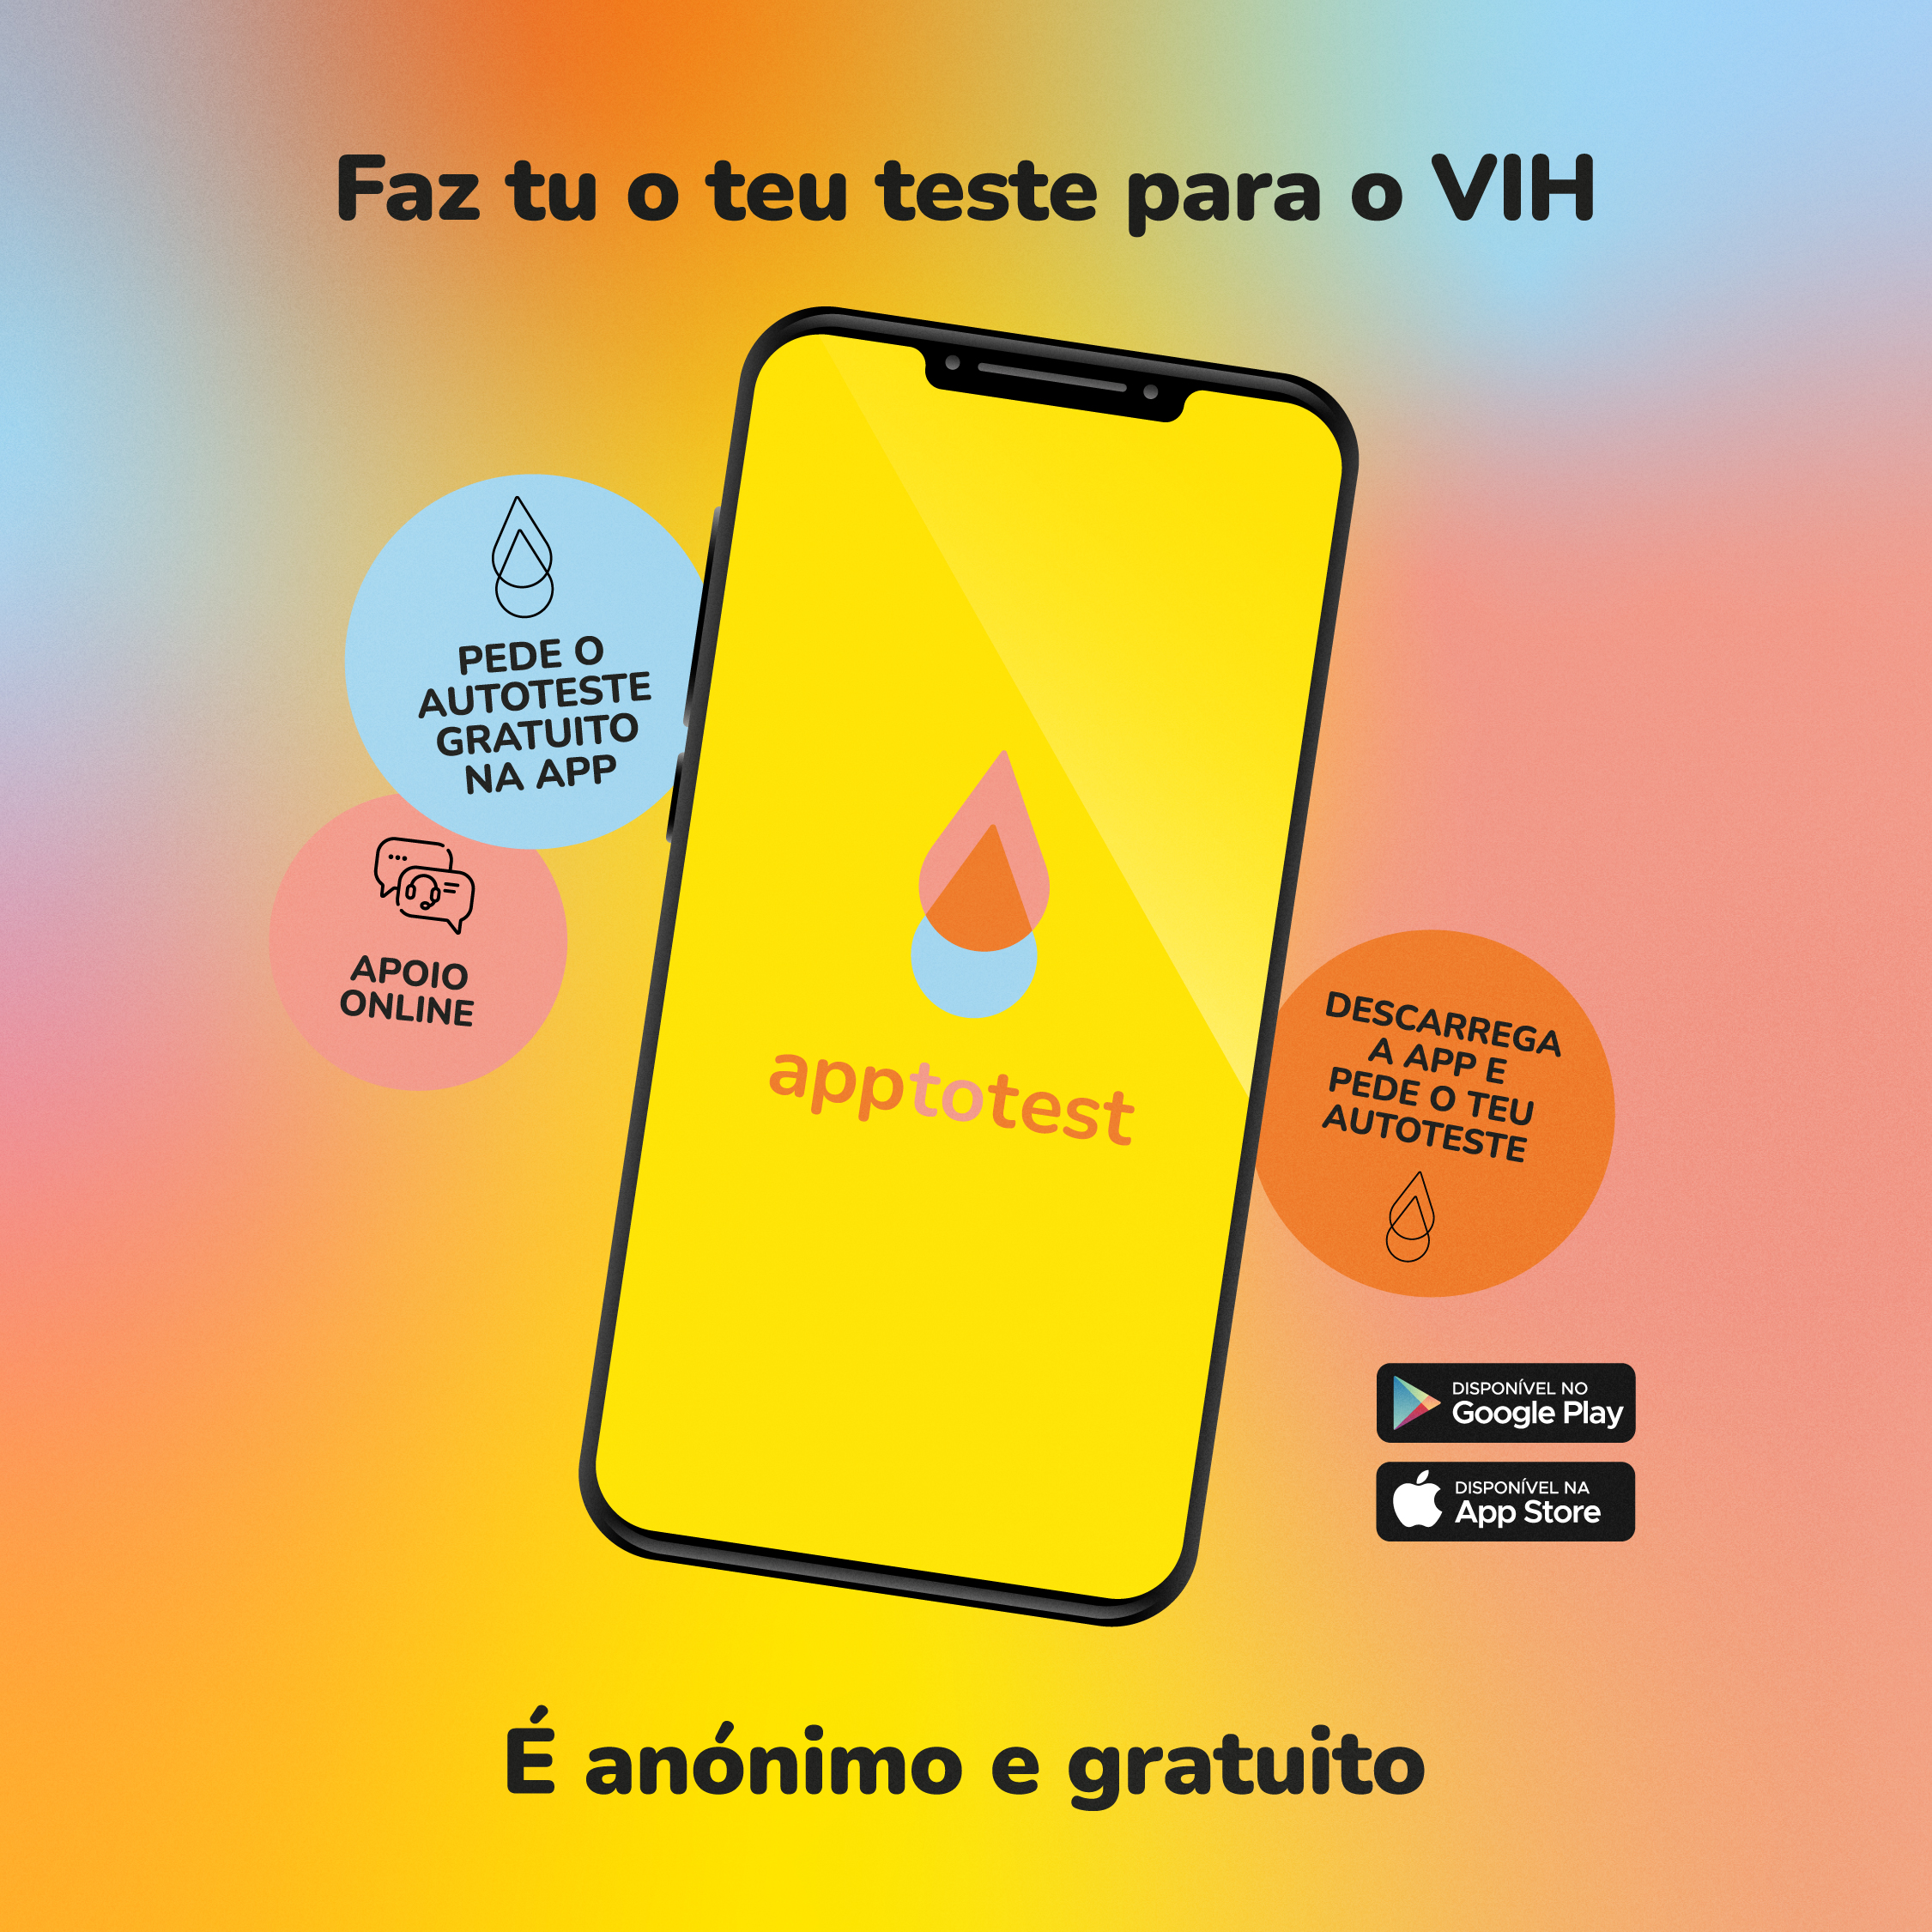 AppToTest lançada no Dia Mundia da Luta contra a SIDA